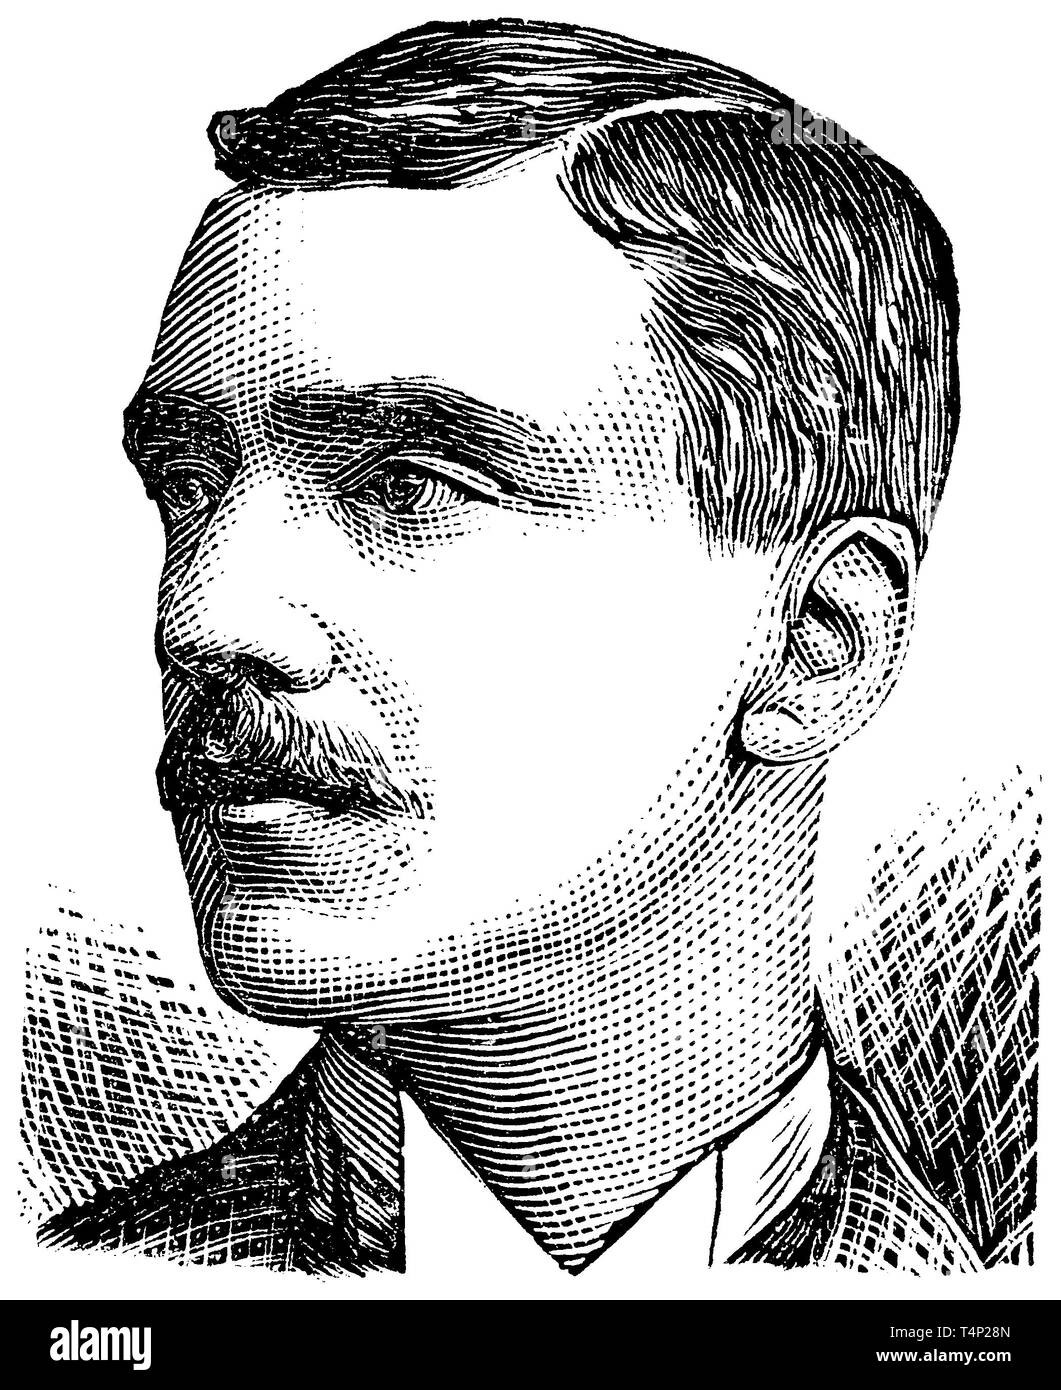 1889 Grabado de ciclista F. W. Allard, más tarde fundador del ciclo Allard Co. Foto de stock